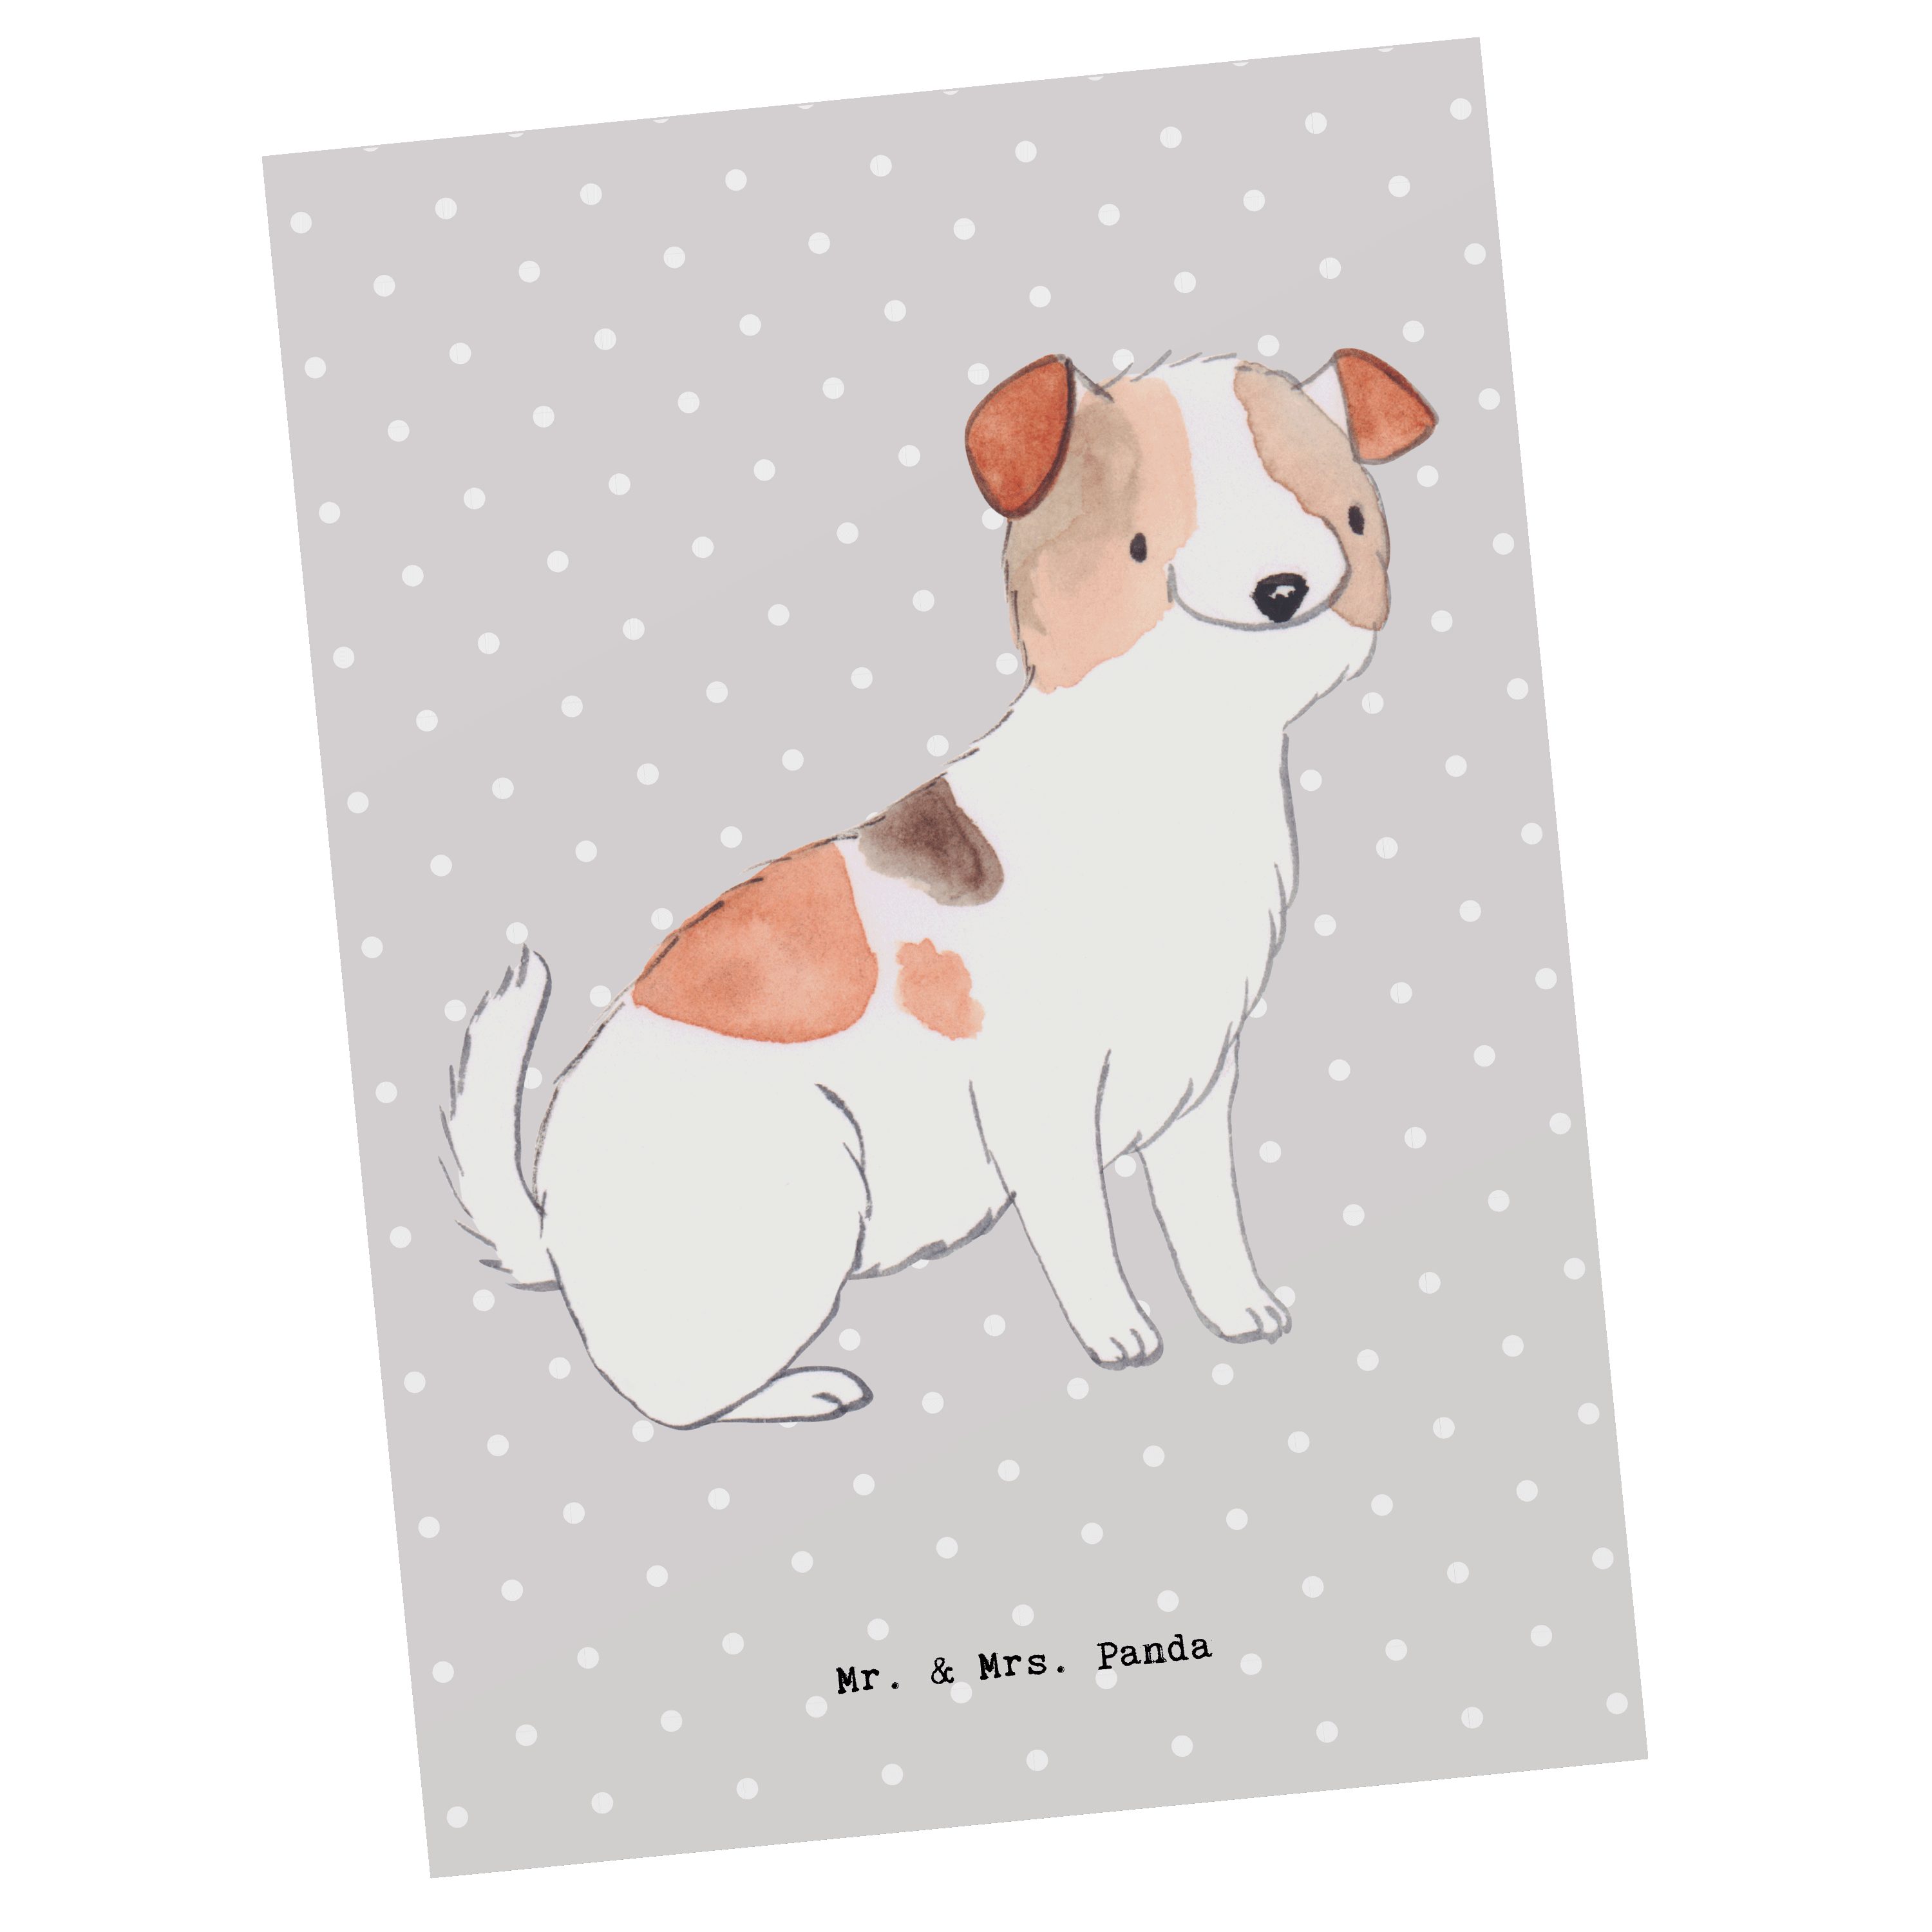 Mr. & Mrs. Panda Postkarte - Moment Terrier Einladung, Ges Geschenk, Jack Russell Pastell - Grau